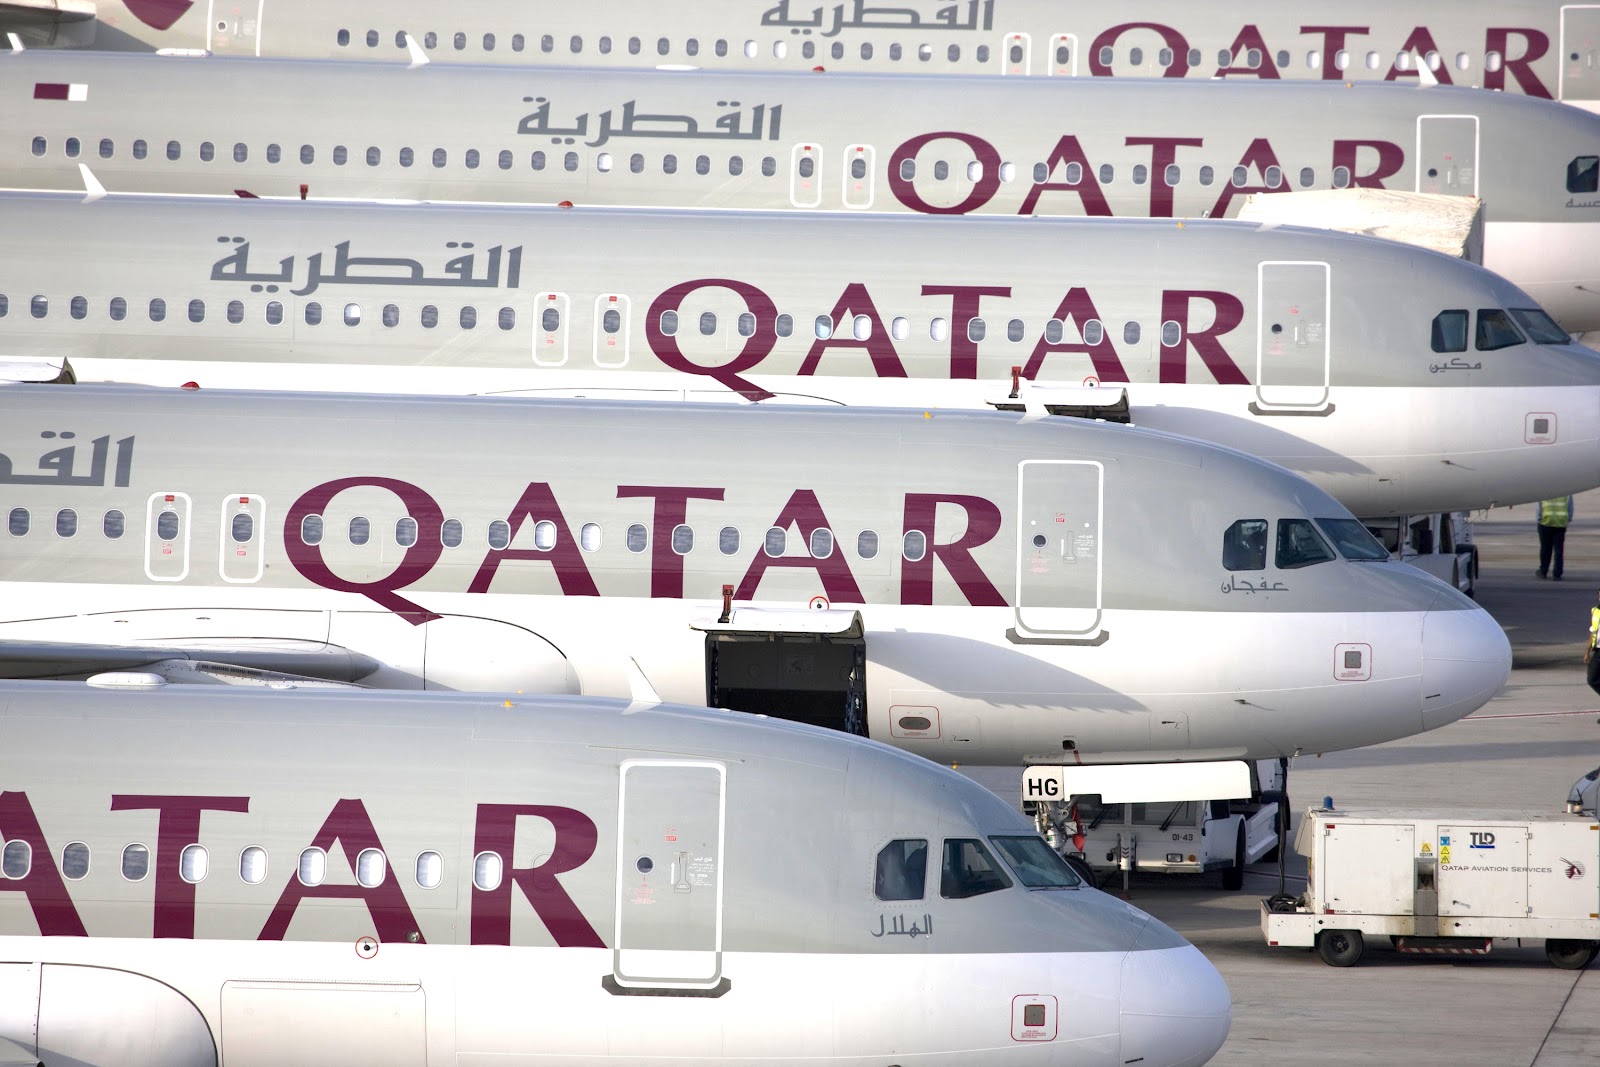 Besplatne promene, refundacije u punom iznosu - to može samo Qatar Airways